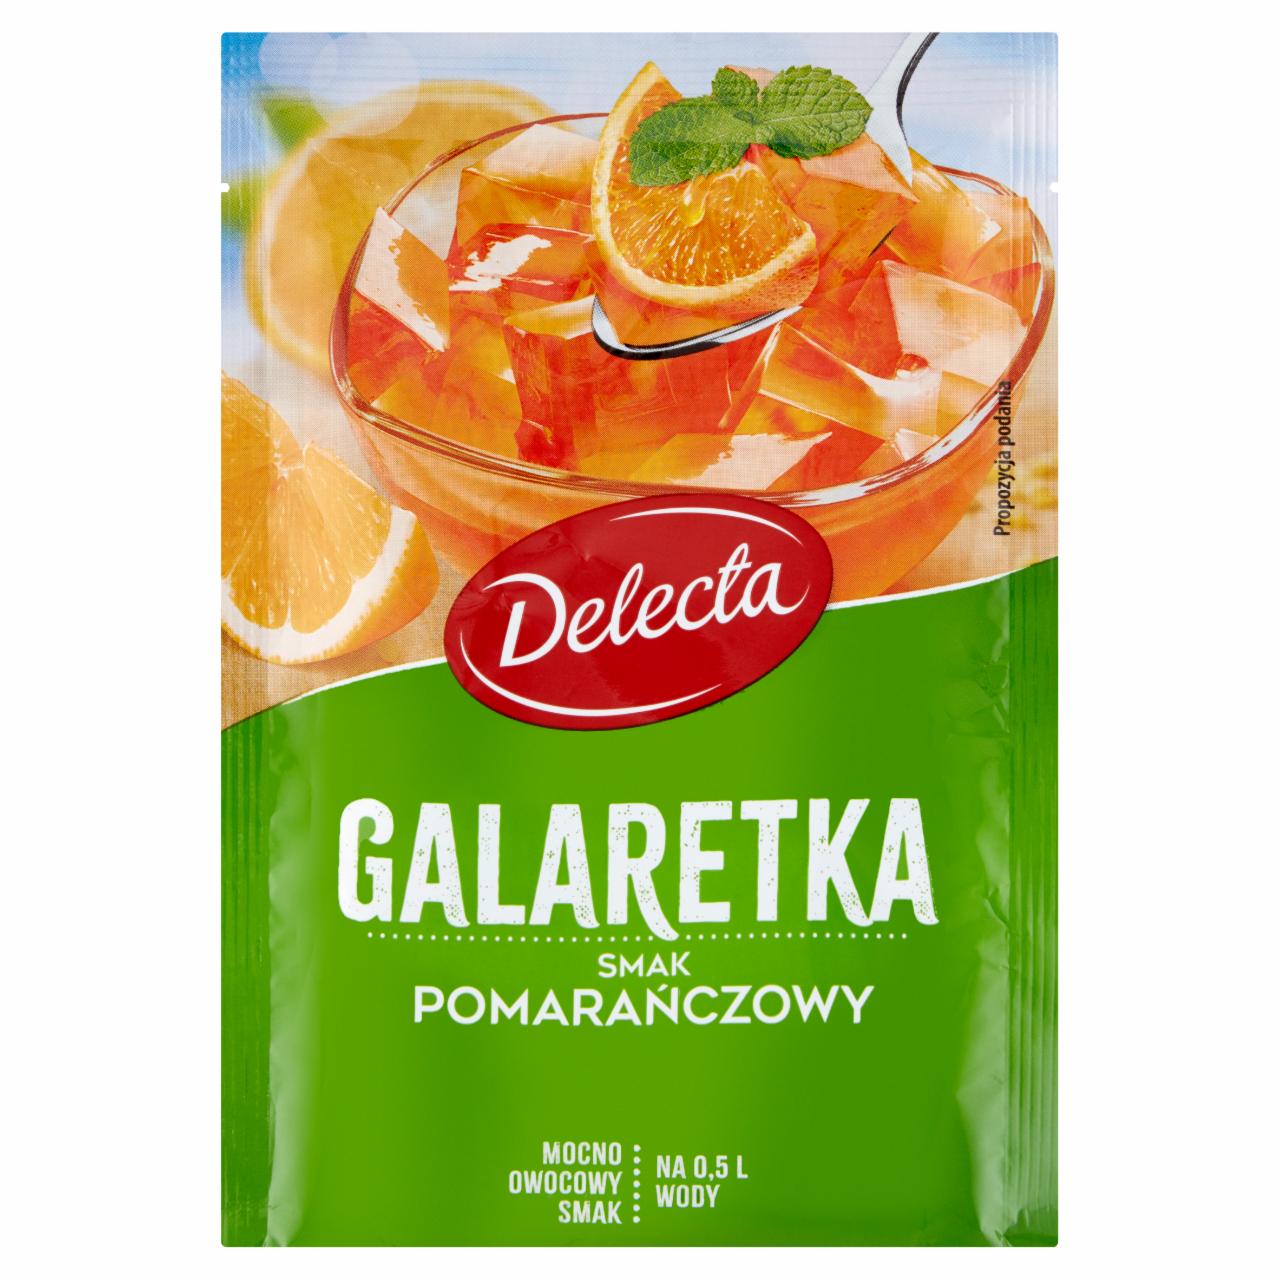 Zdjęcia - Delecta Galaretka smak pomarańczowy 70 g